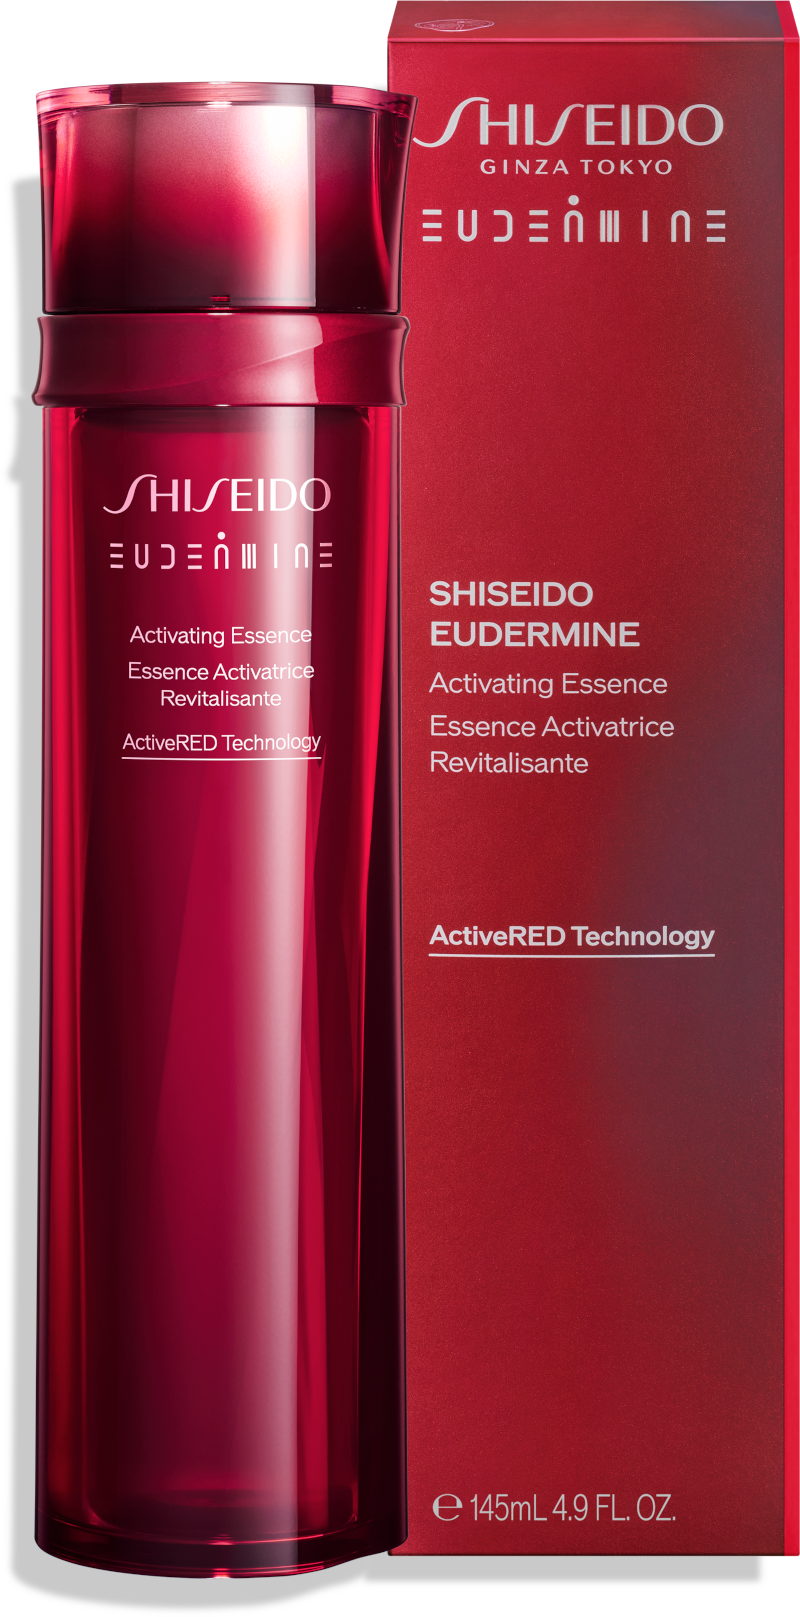 Japon Kadınlarının Güzellik Ritüellerinin Sırrı Olan Shiseido İkonik Güzellik Esansı Artık Türkiye’de!